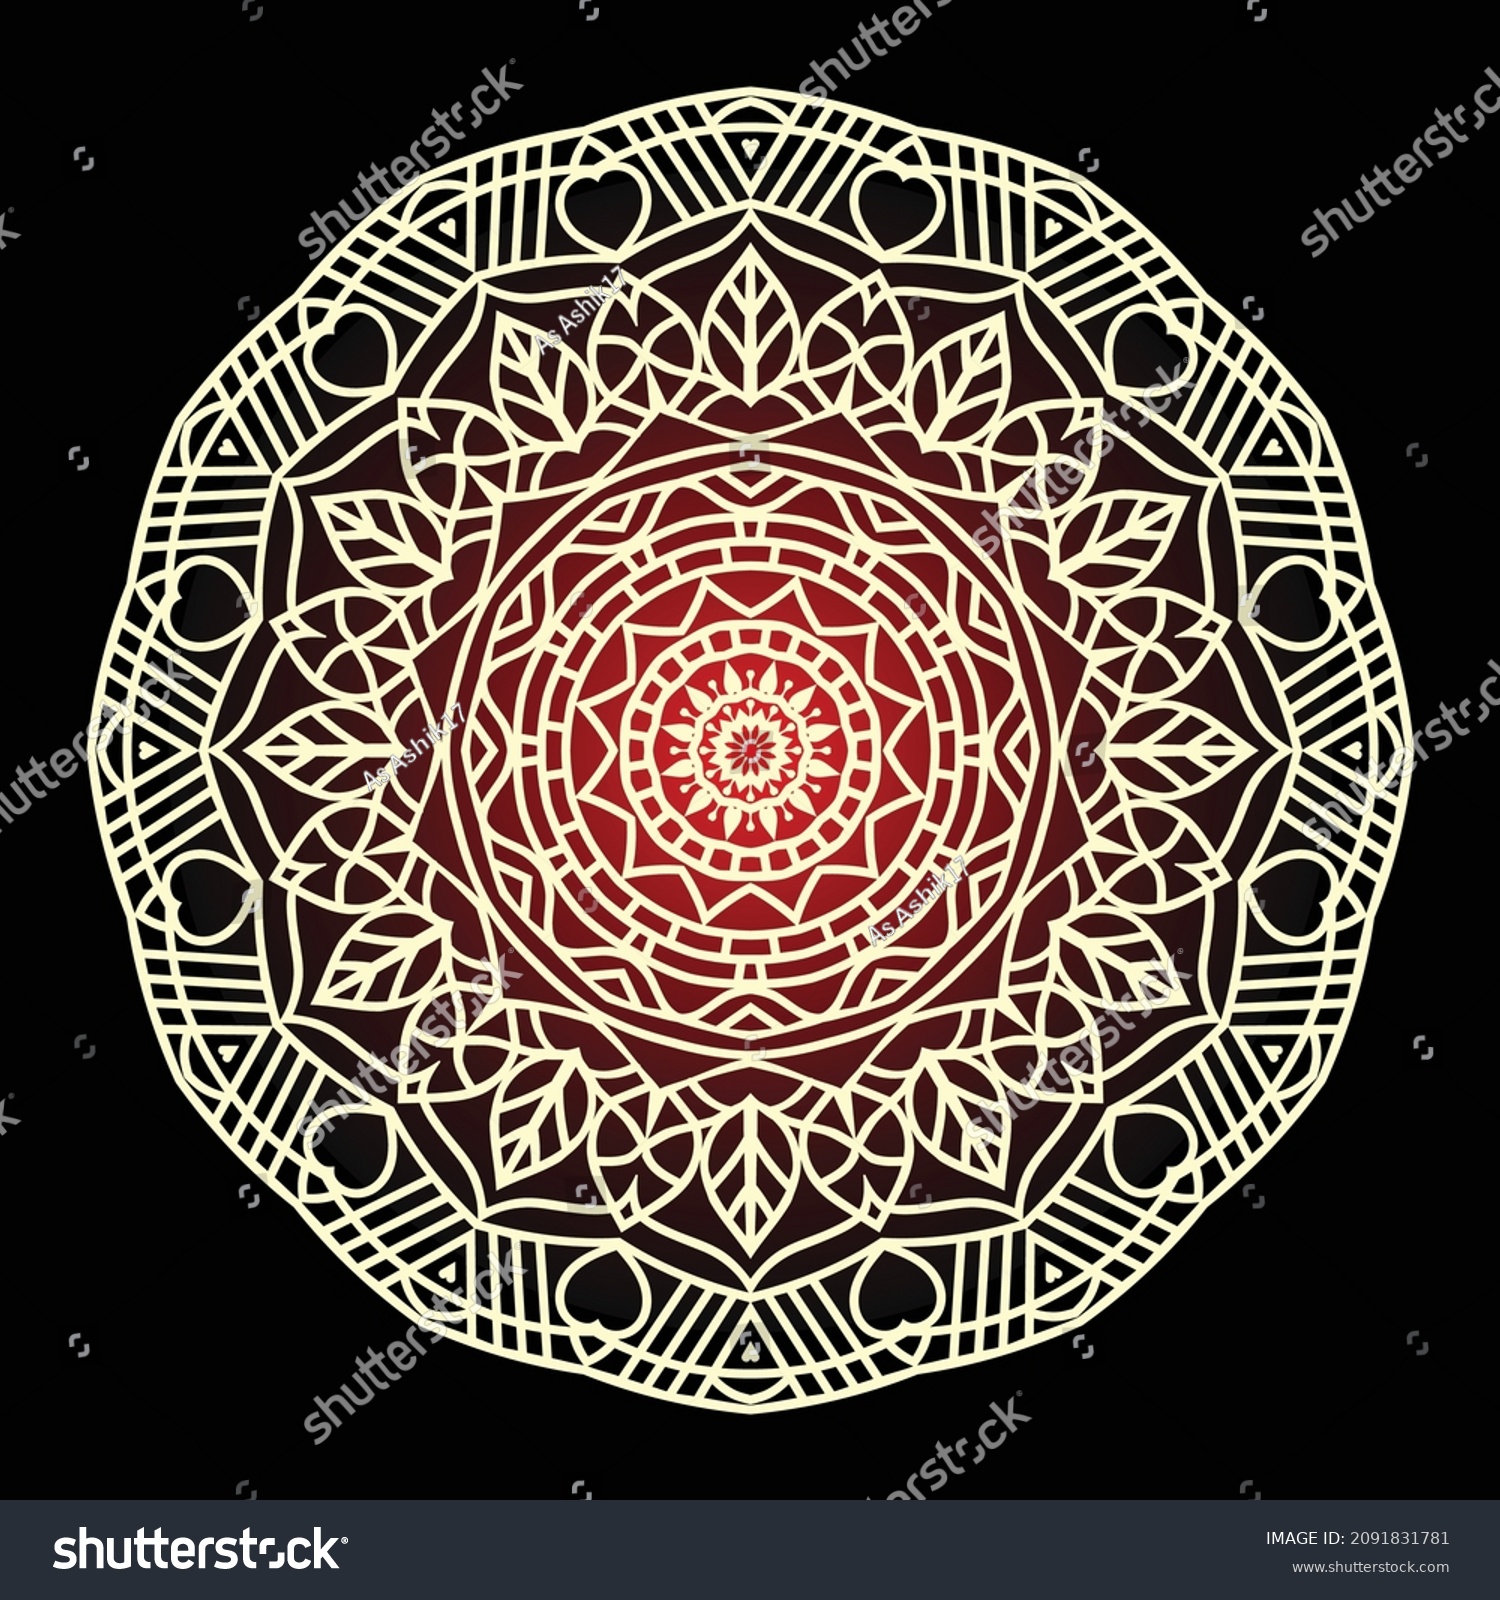 SVG of Mandala for Coloring Book Page, Black Background Vector Illustration  svg